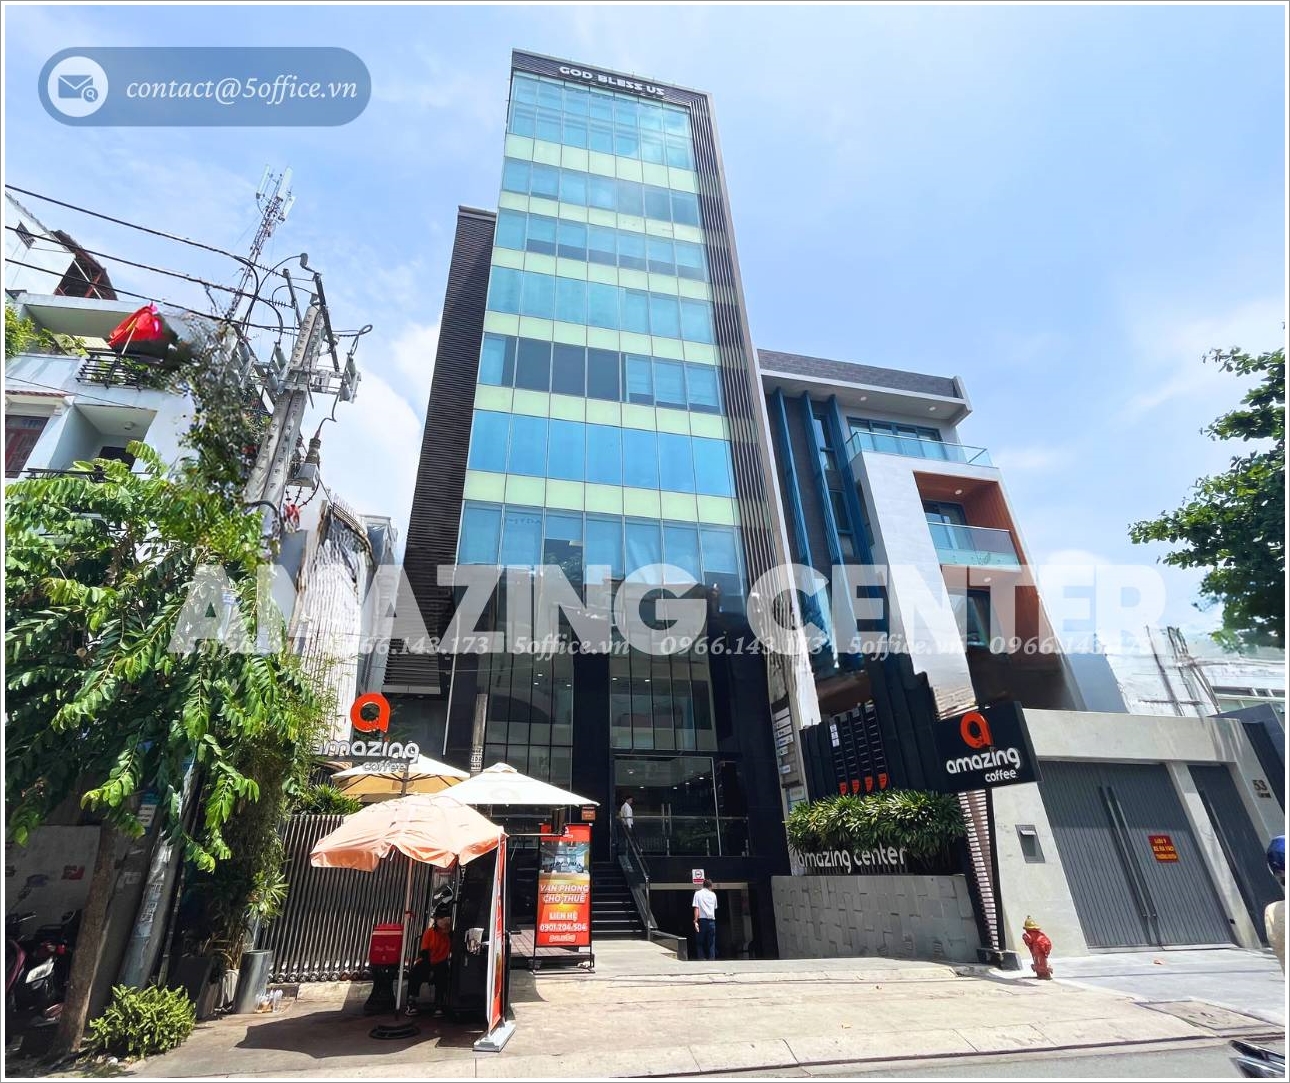 Cao ốc văn phòng cho thuê Amazing Center, Yên Thế, Quận Tân Bình, TP.HCM - BQL: 0909.170.387